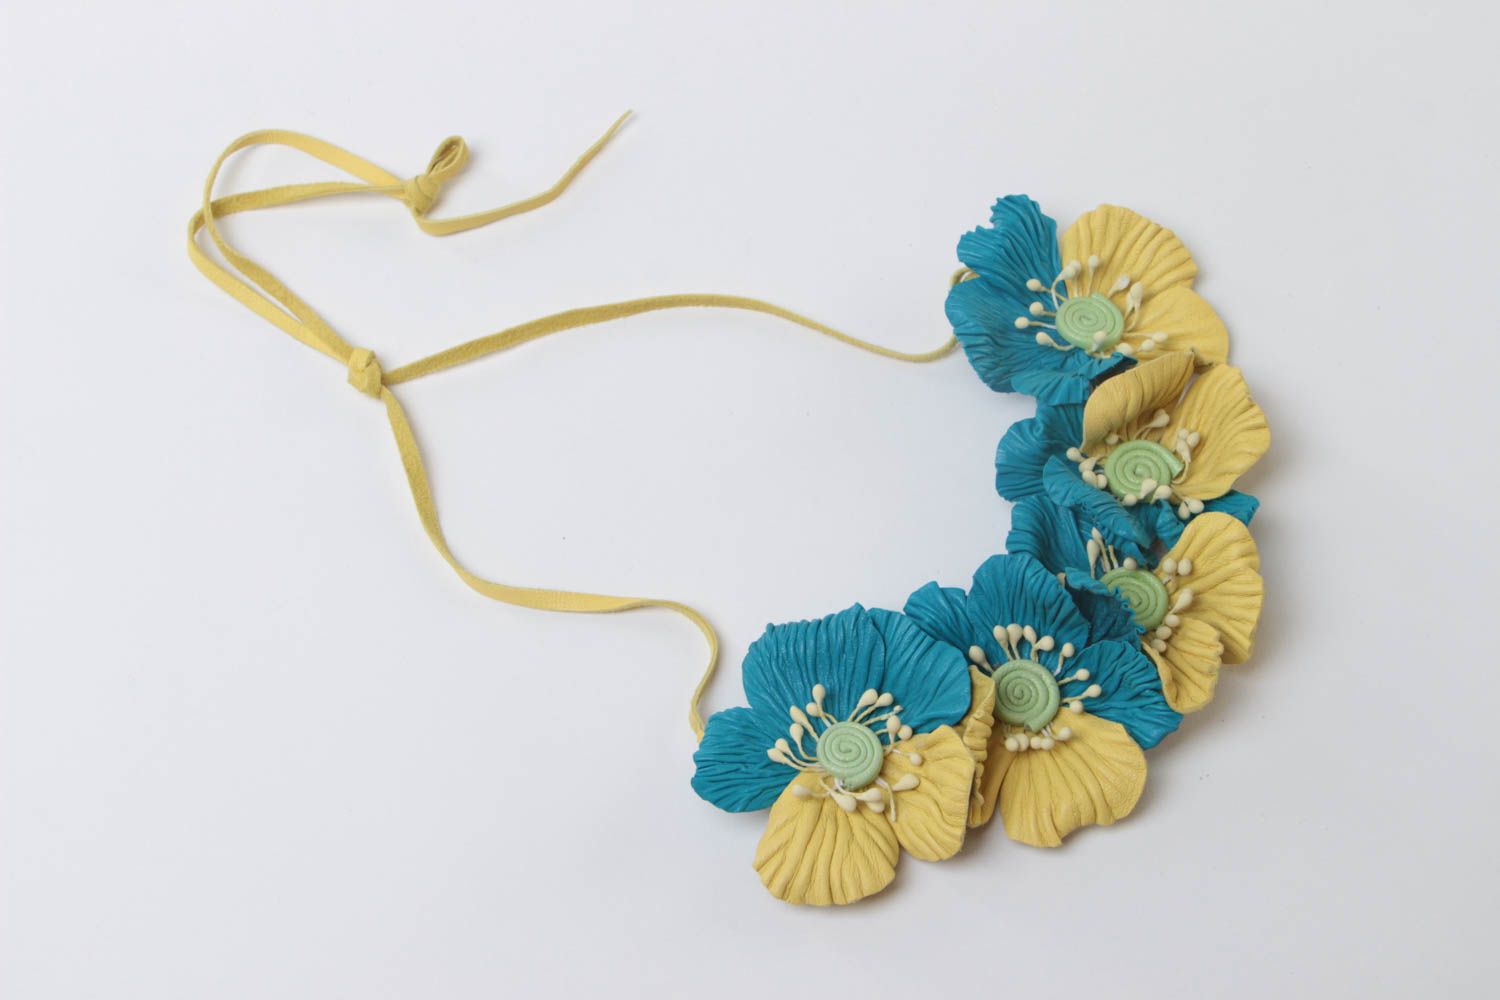 Collier en cuir naturel fleurs jaune-bleu fait main design original pour été photo 2